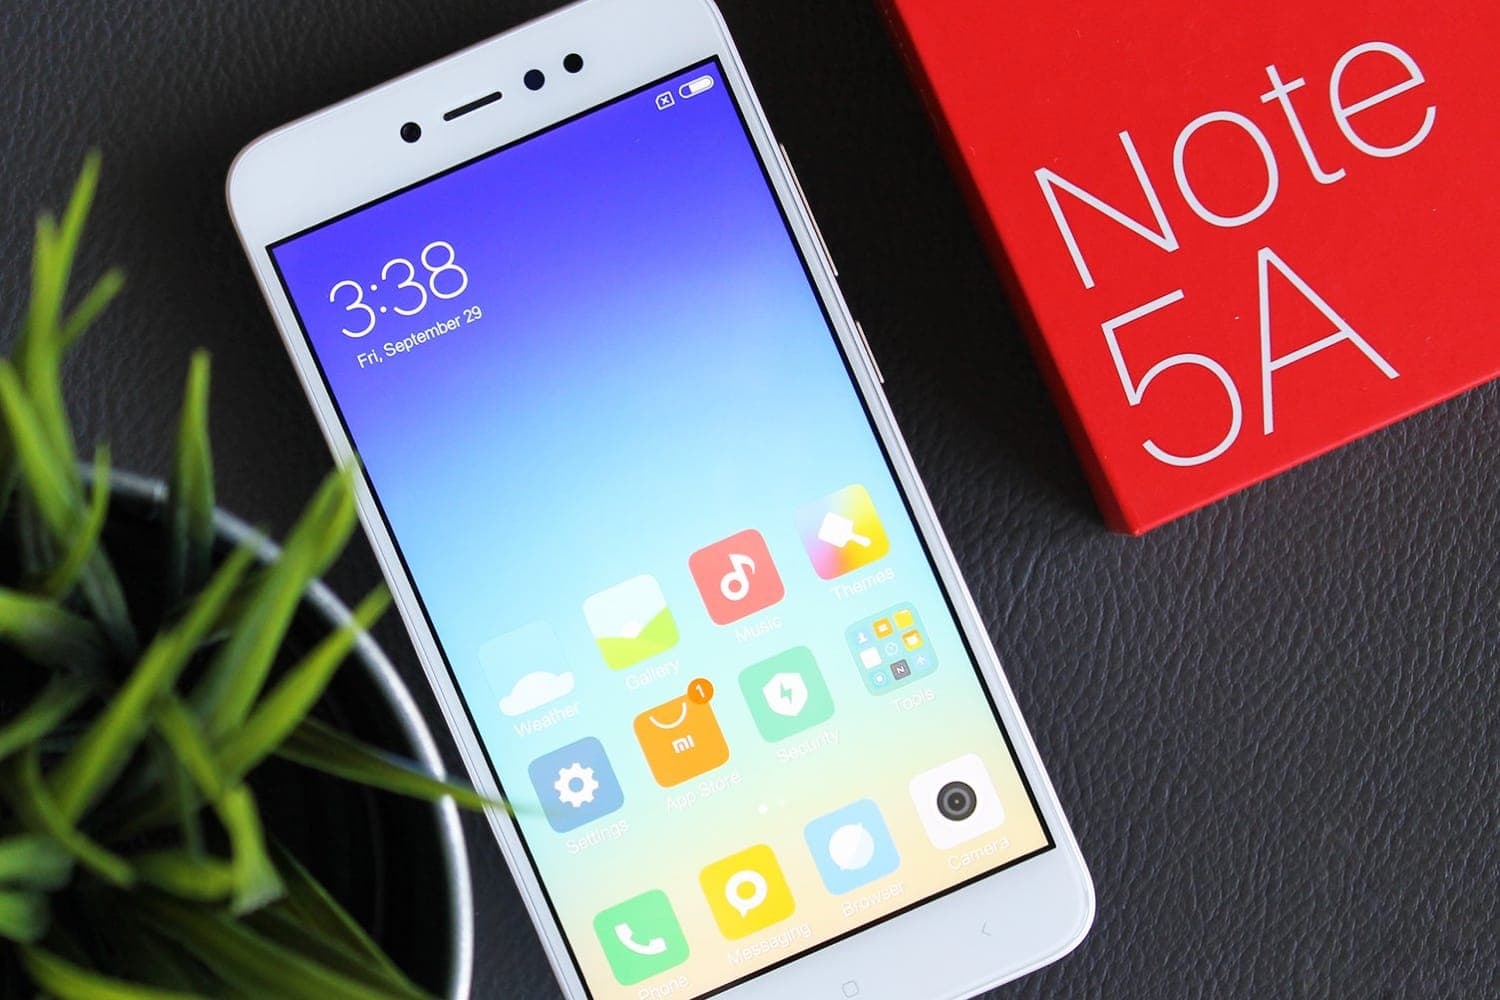 Xiaomi Note 5 Prime